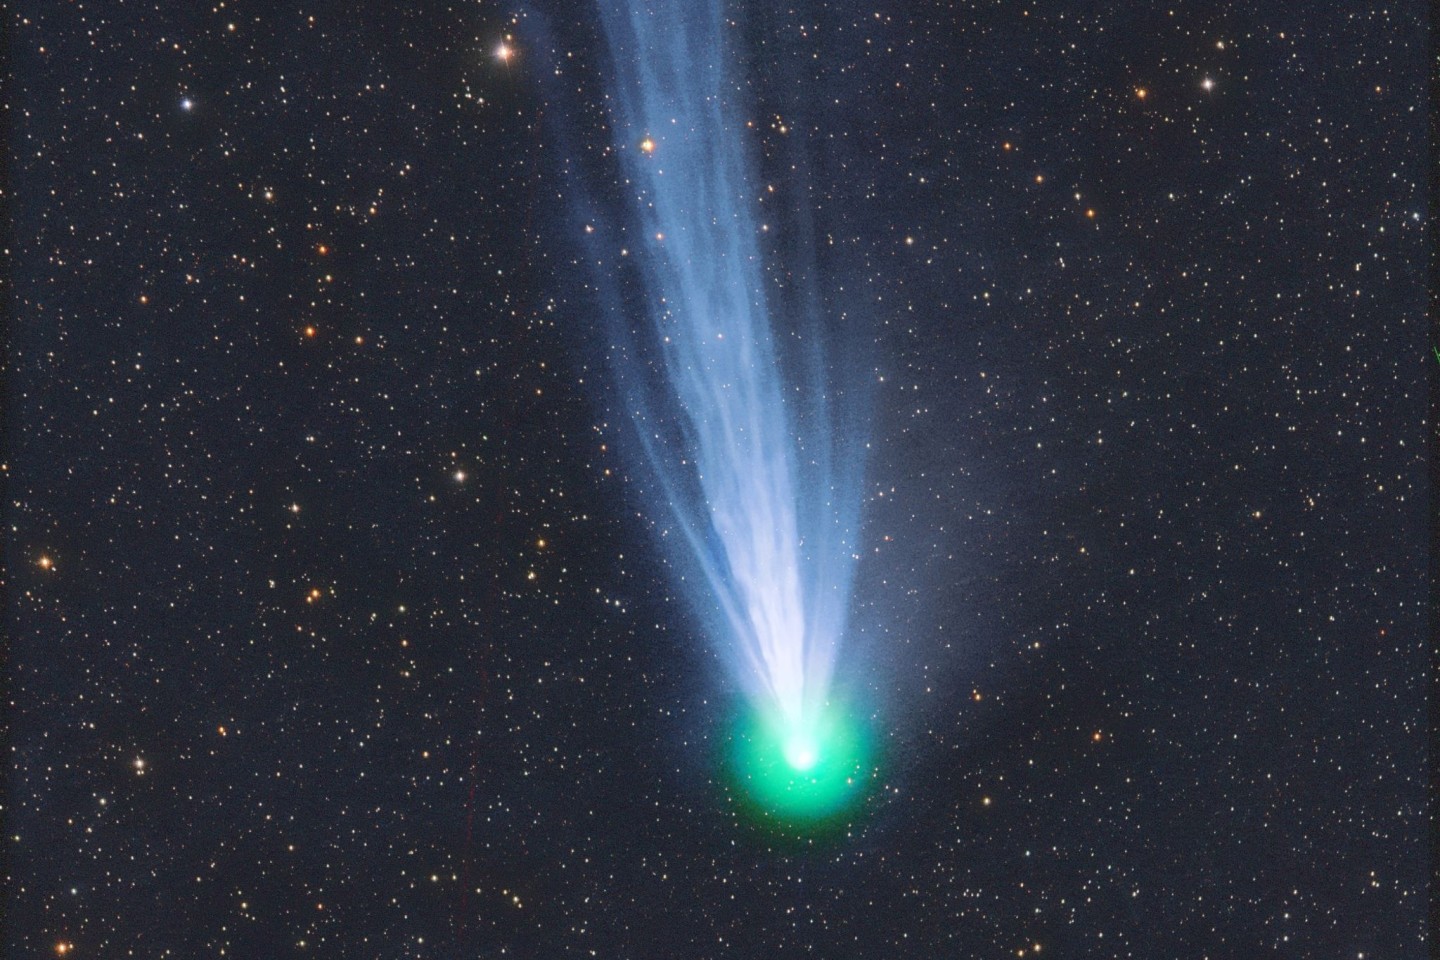 Gut alle 70 Jahre zieht Komet 12 P/Pons-Brooks seine Bahn und kann für Tage von der Erde aus gesehen werden - meist mit den nötigen Hilfsmitteln.